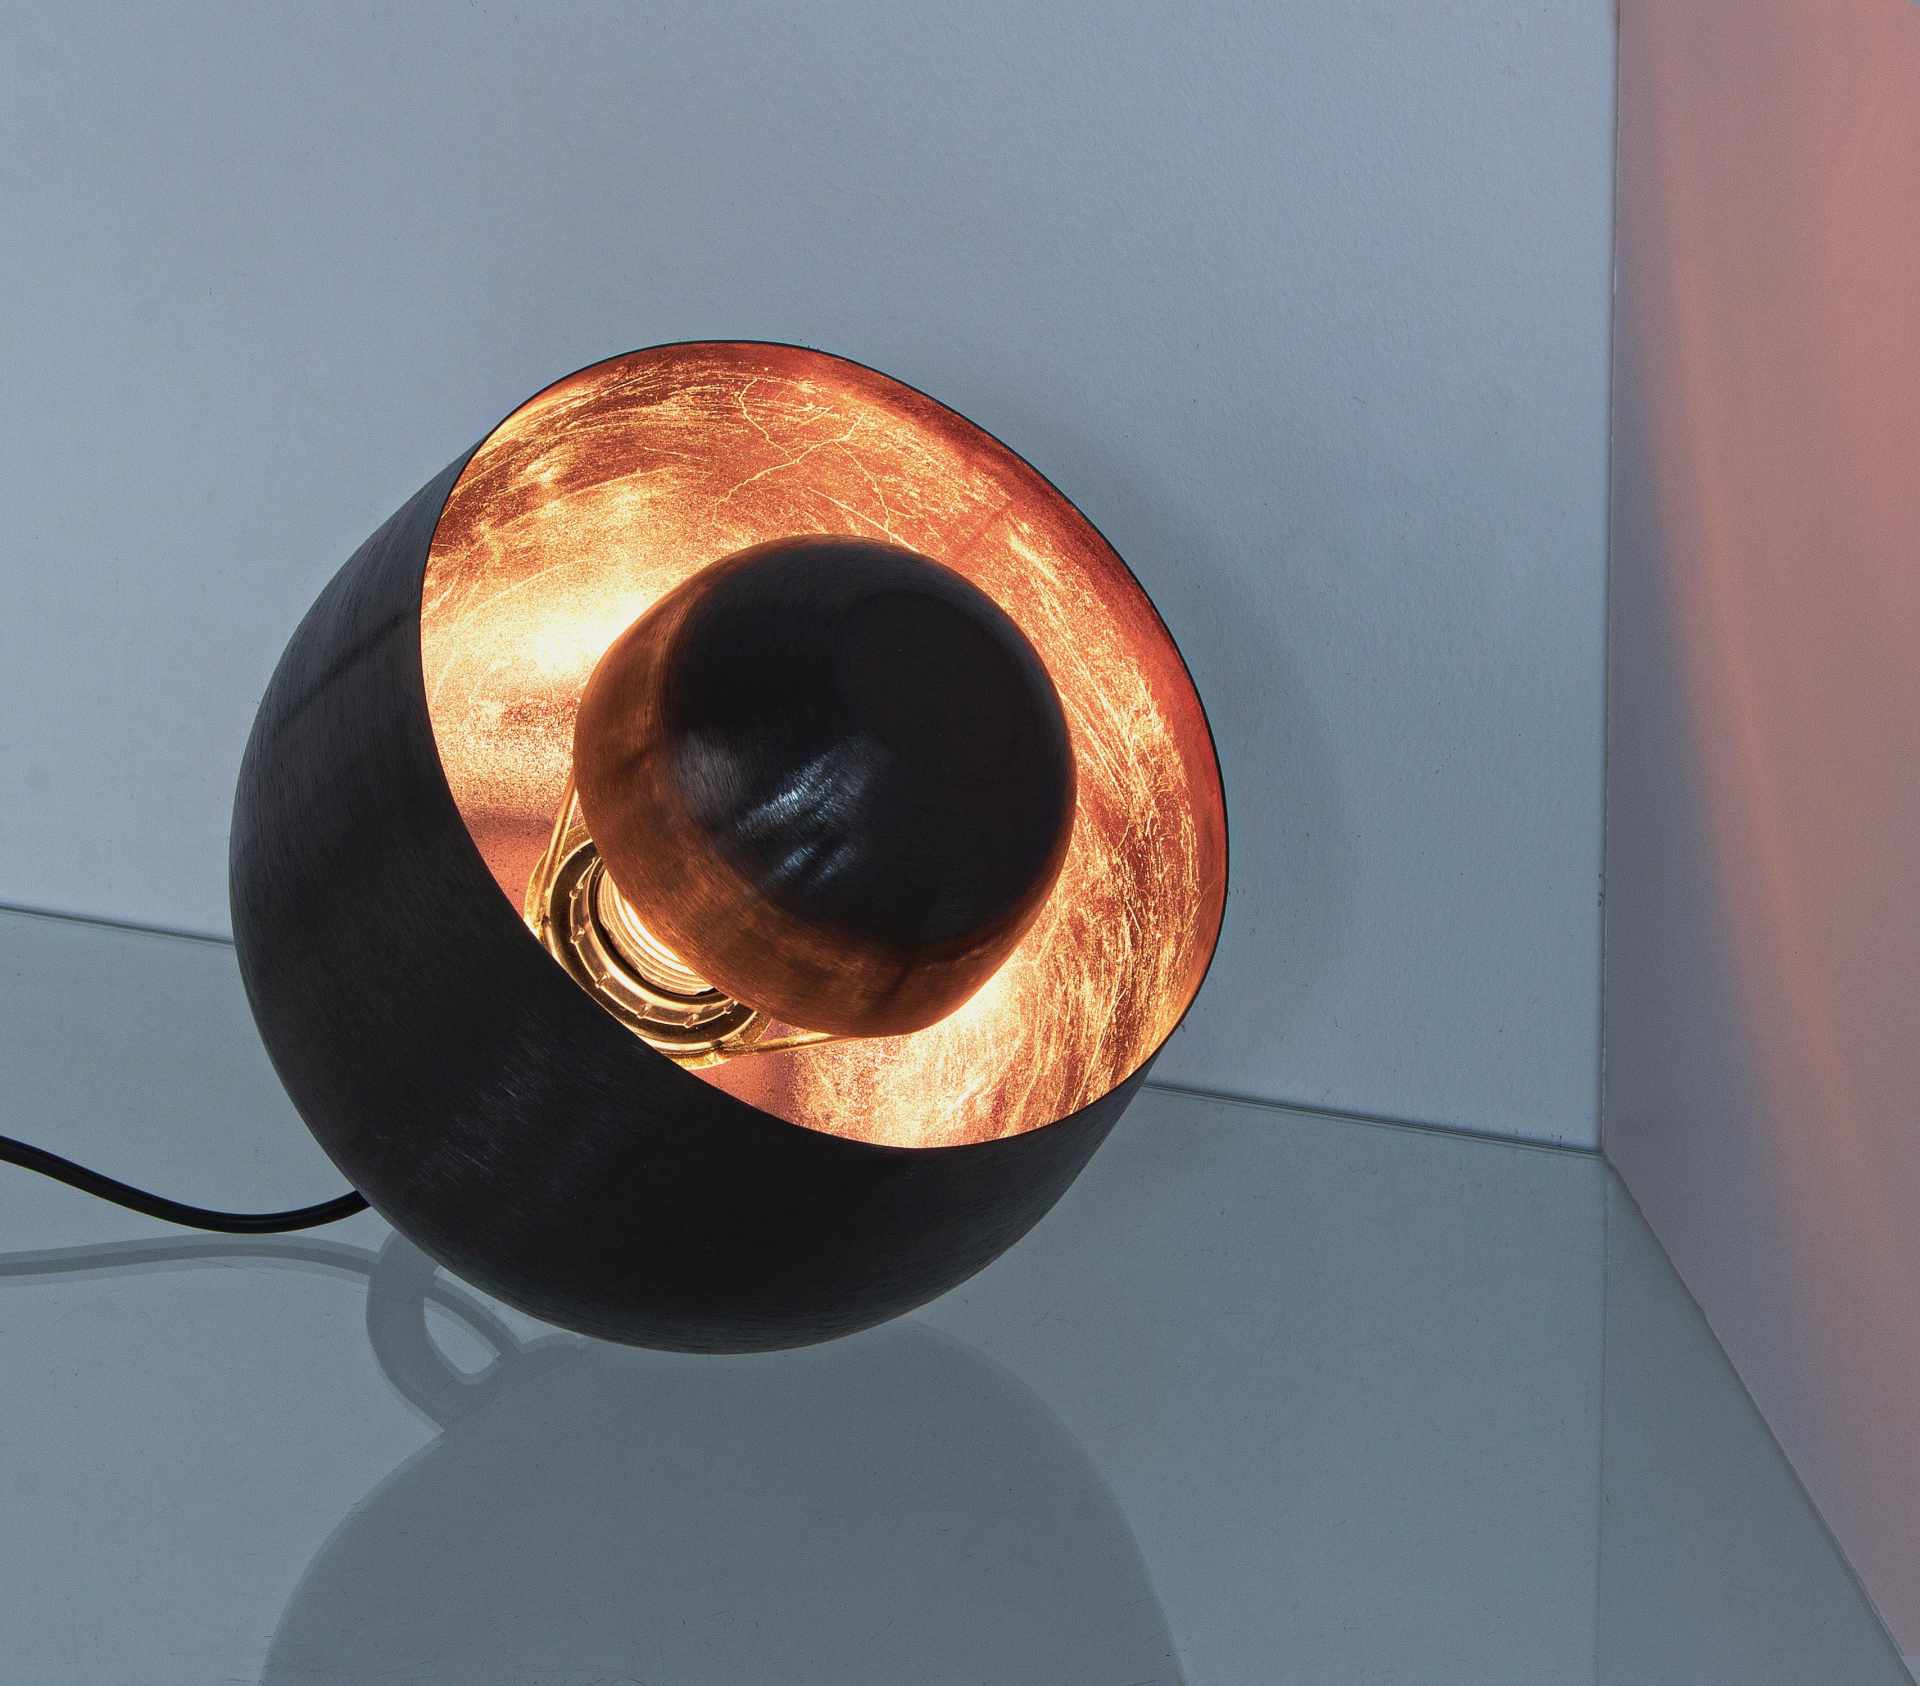 Die Tischleuchte Ishan überzeugt mit ihrem modernen Design. Gefertigt wurde sie aus Metall, welches einen schwarzen Farbton besitzt. Die Lampe hat eine Lichtquelle. Die Lampe besitzt eine Höhe von 22 cm.